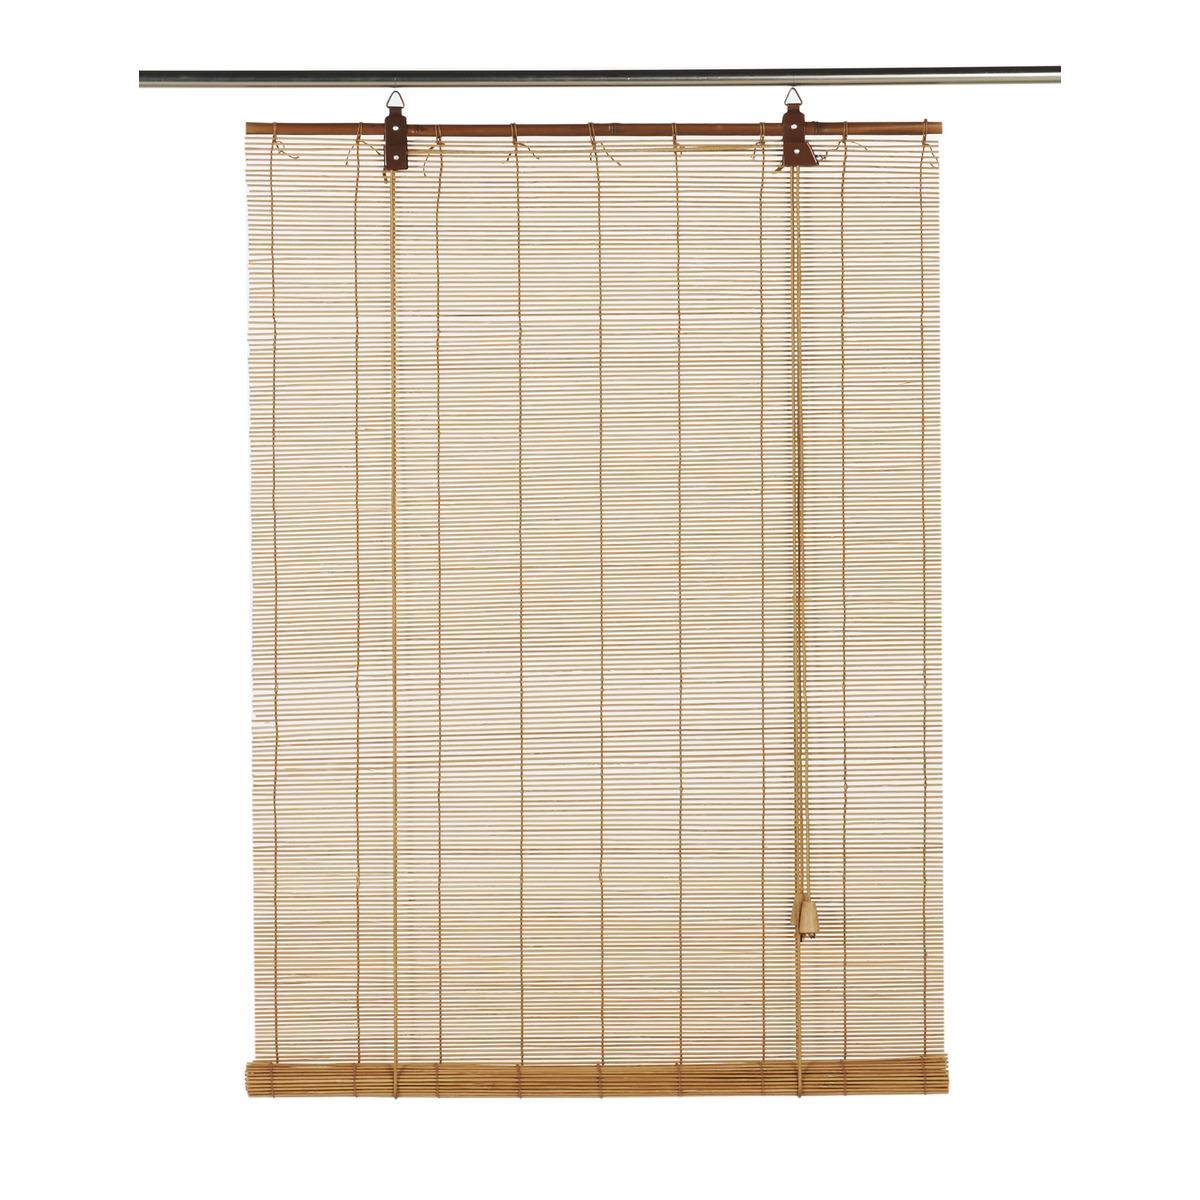 Store enrouleur en bambou - 60 x 180 cm - Marron